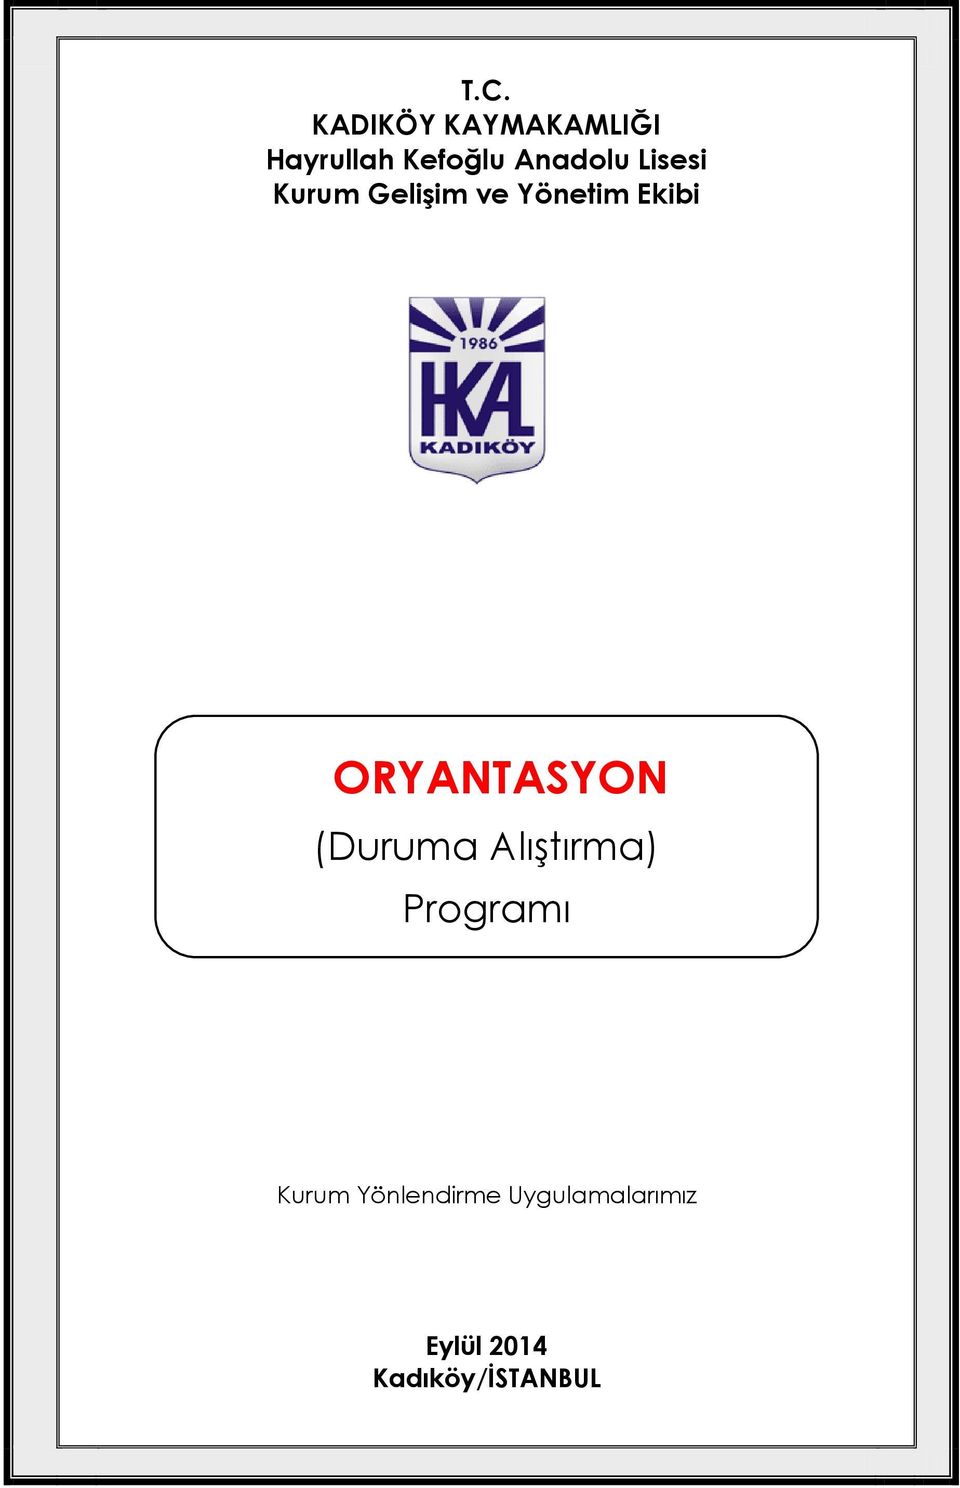 ORYANTASYON (Duruma Alıştırma) Programı KONU: